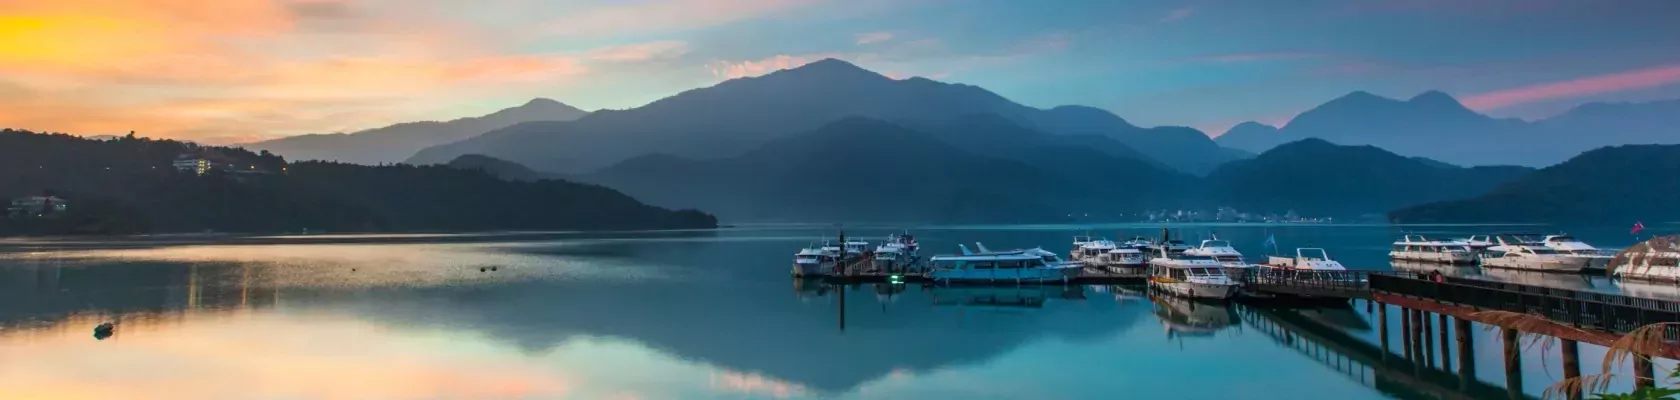 Taiwan Sun Moon Lake